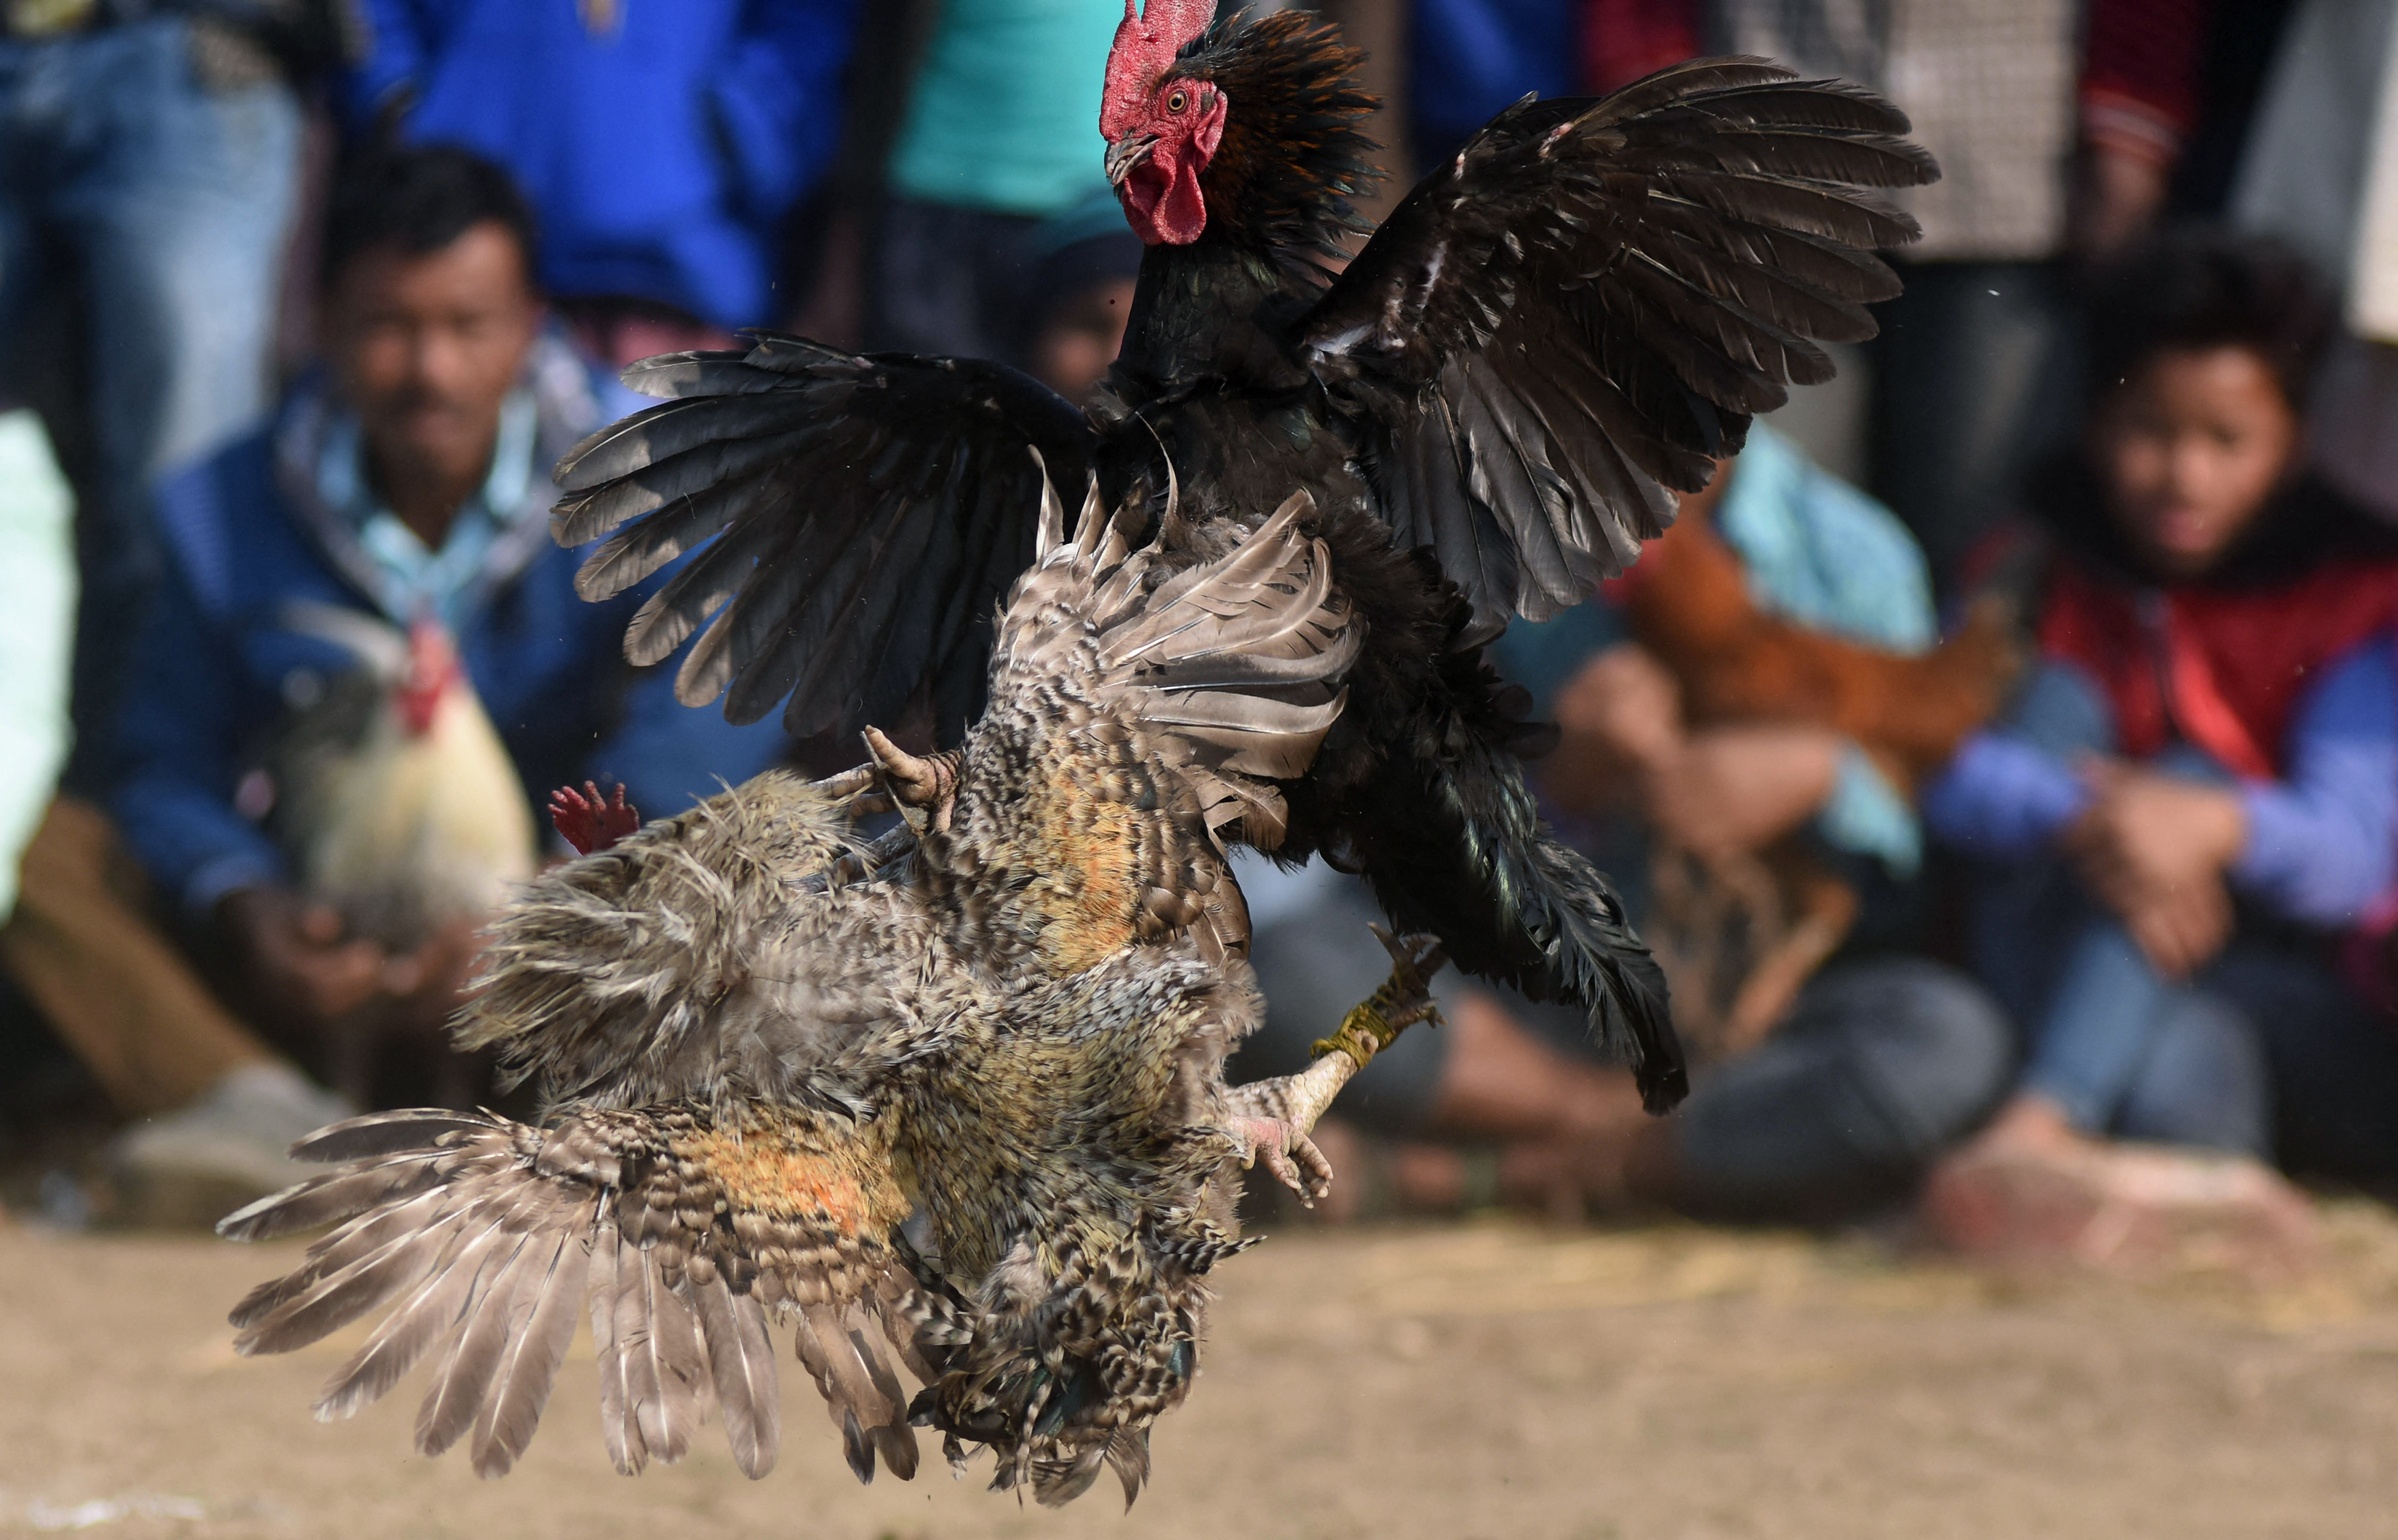 Las peleas de gallos en la Ciudad de México son ilegales, por lo que se llevan a cabo en palenques clandestinos (foto: Biju BORO / AFP)